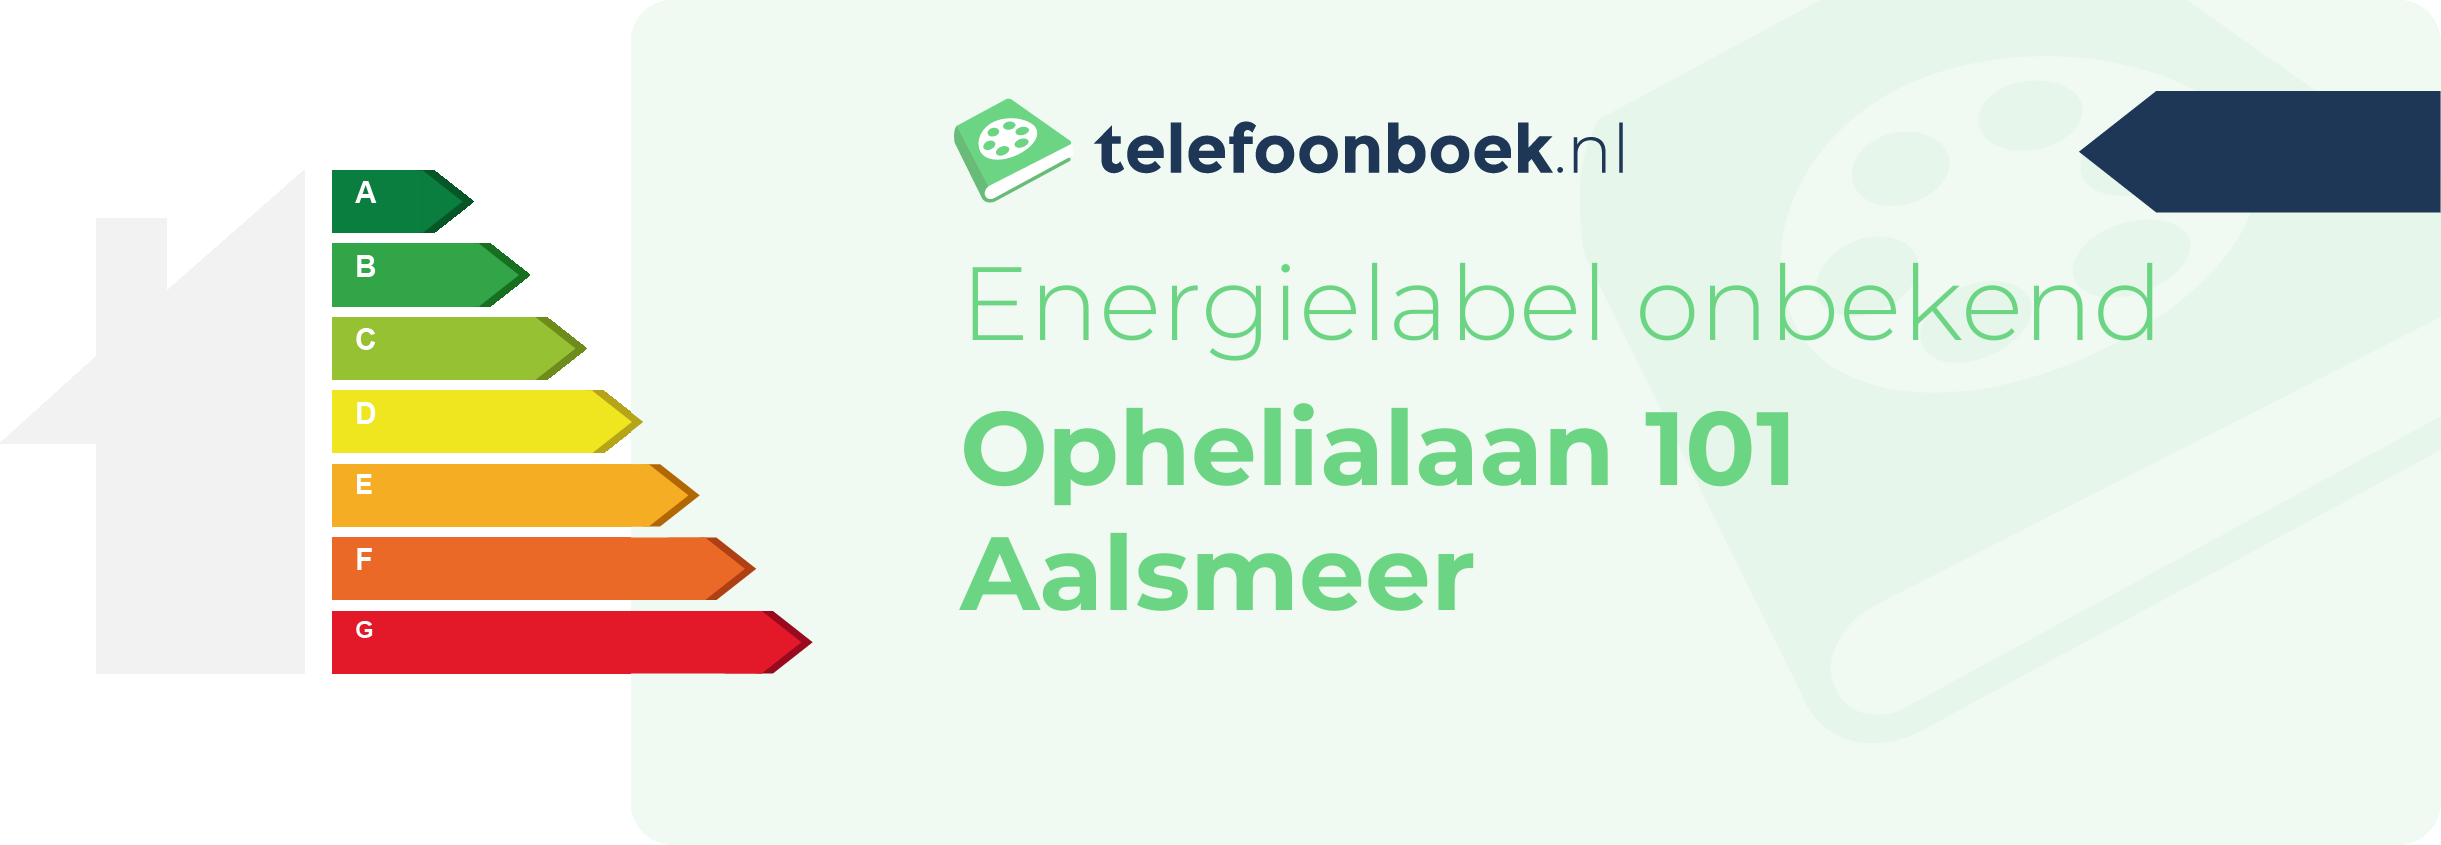 Energielabel Ophelialaan 101 Aalsmeer